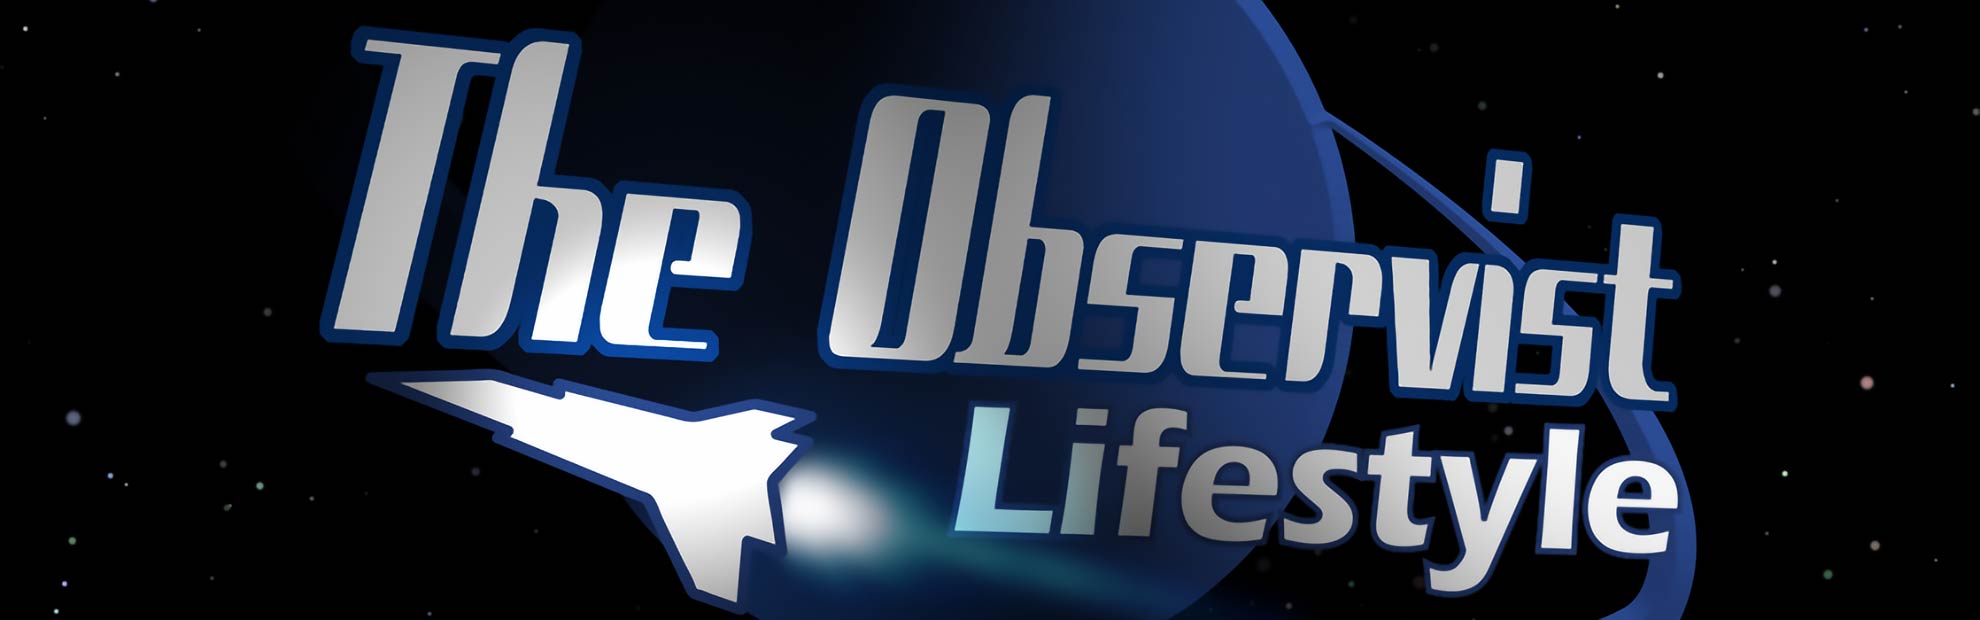 Star Citizen The Observist Lifestyle: Go Sataball Team!